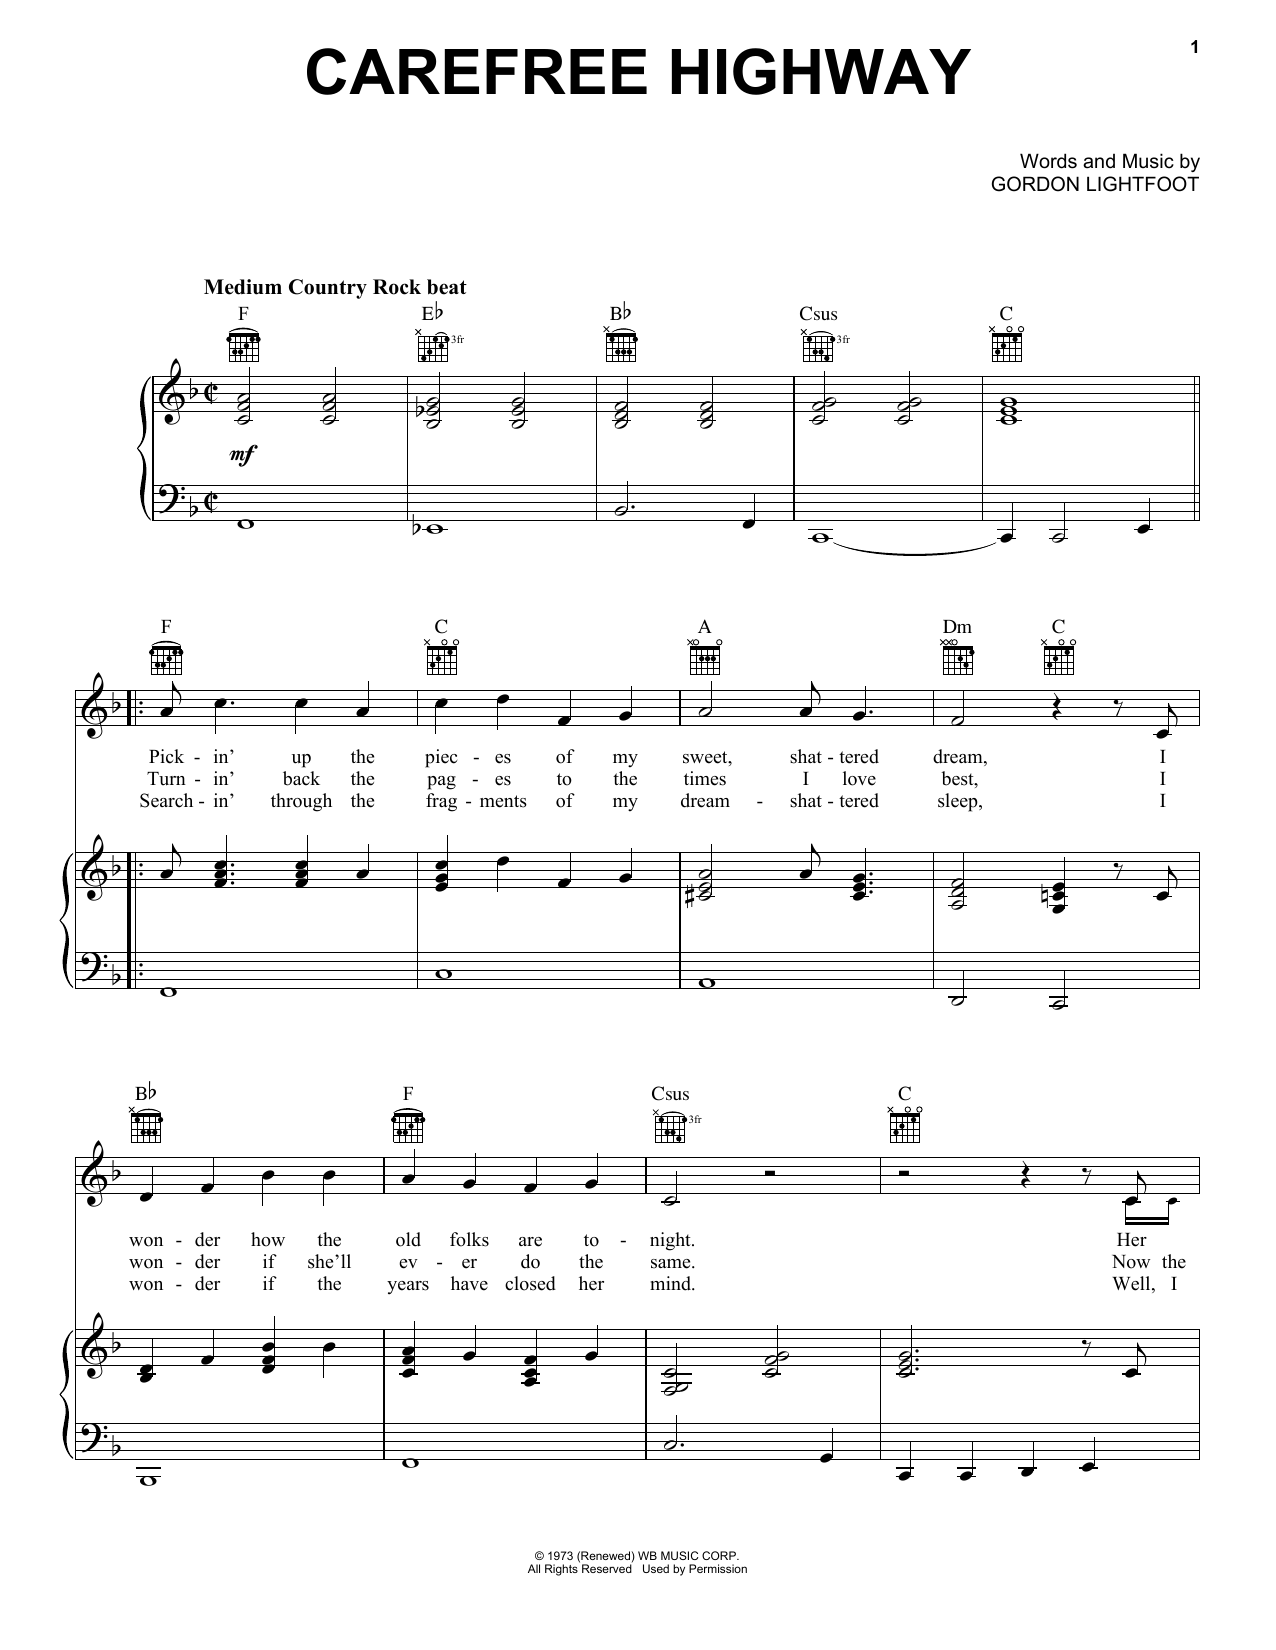 Gordon Lightfoot Carefree Highway Sheet Music Notes & Chords for Lyrics & Chords - Download or Print PDF